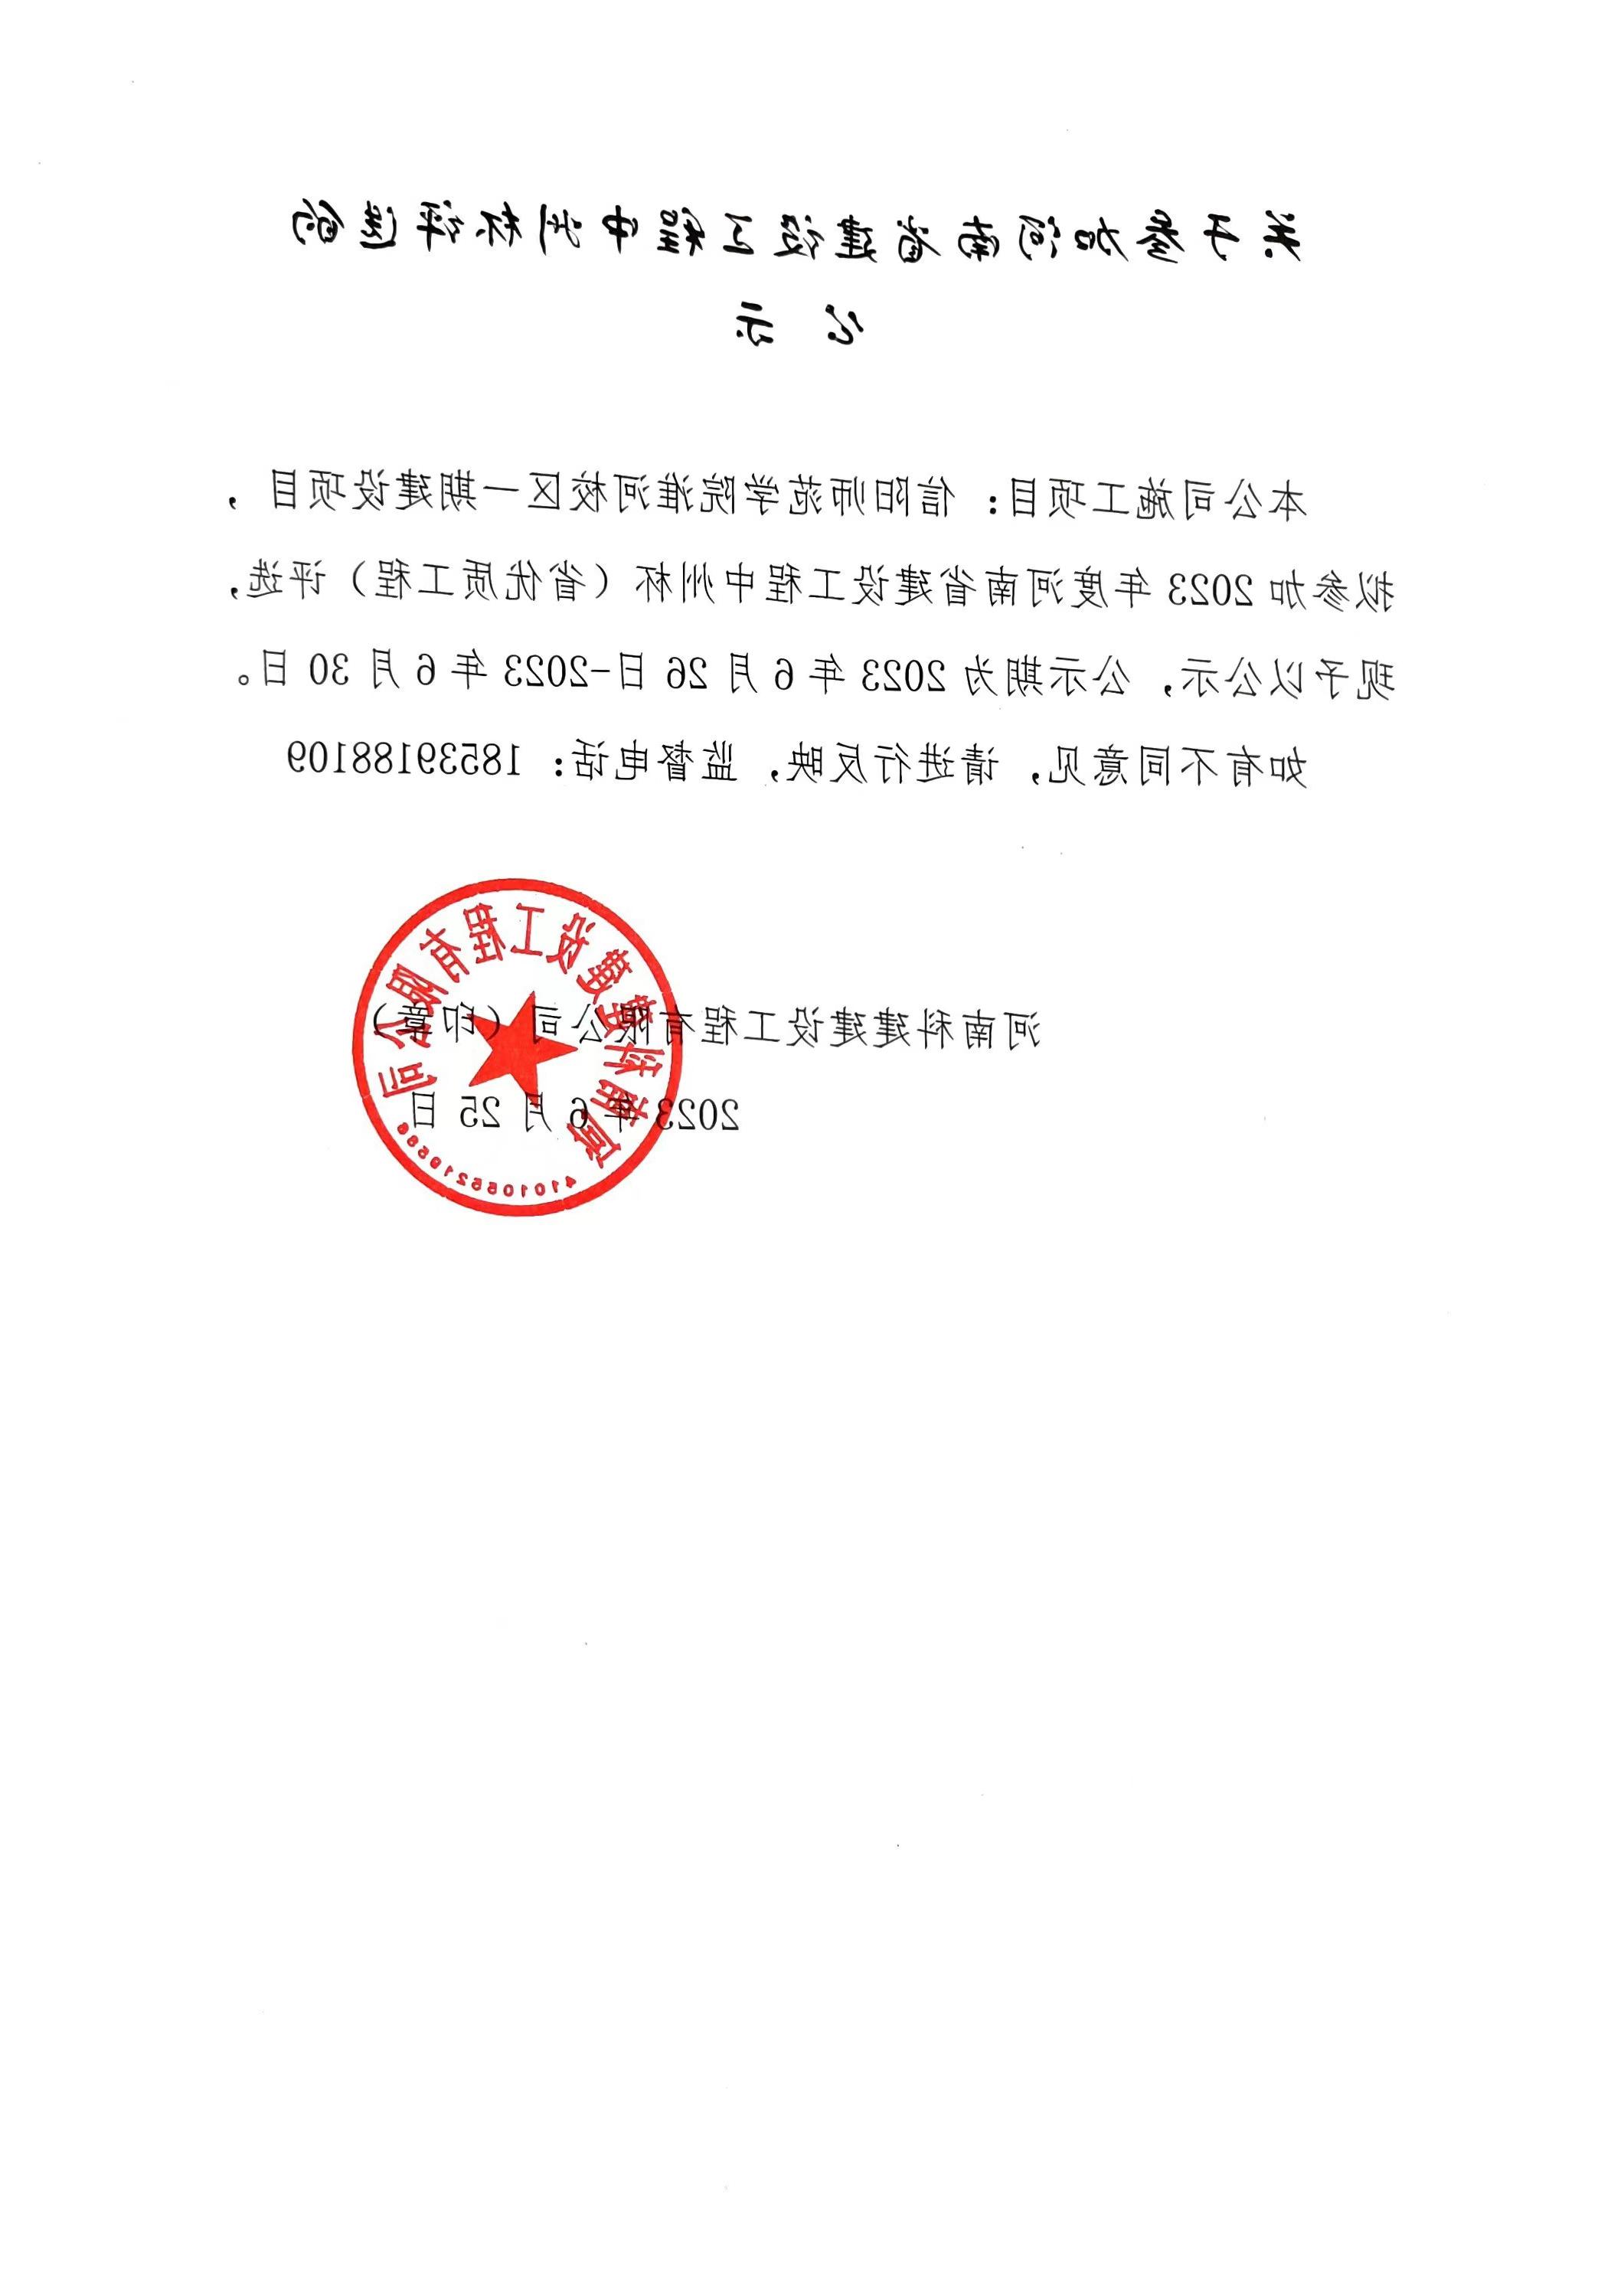 关于参加河南省建设工程中州杯评选的公示